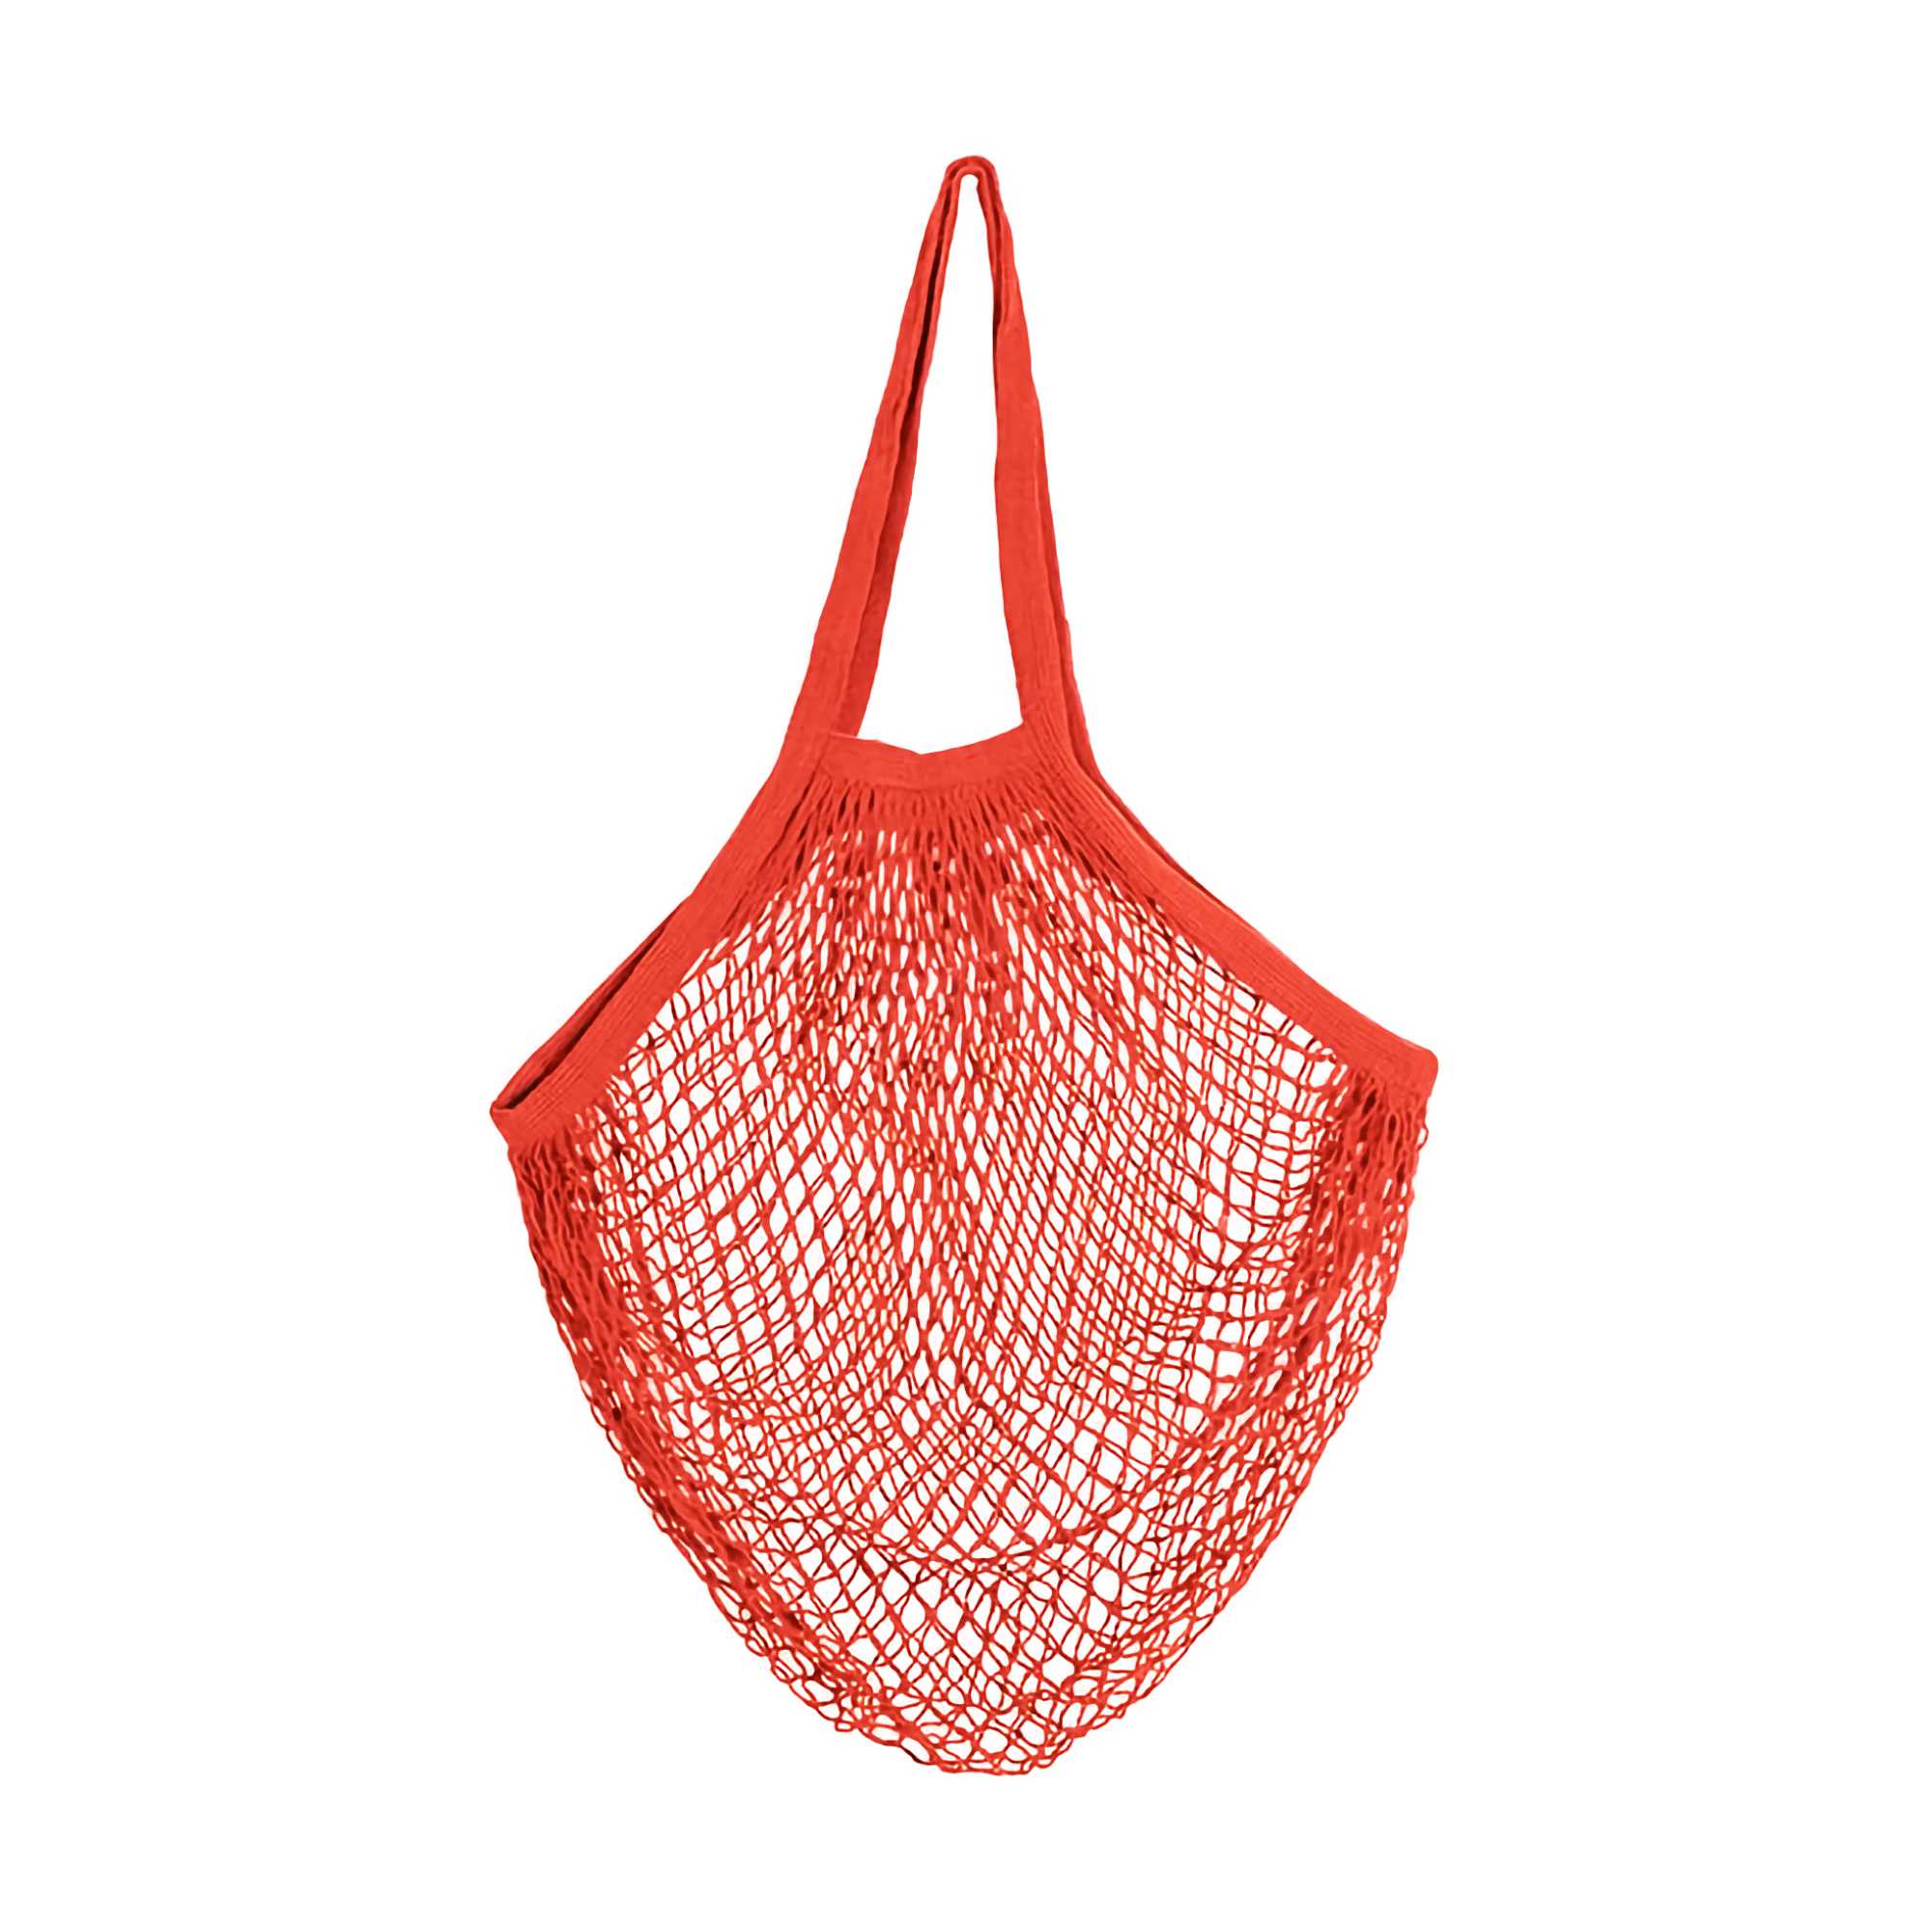 Kikkerland Cotton Net Market Bag, red